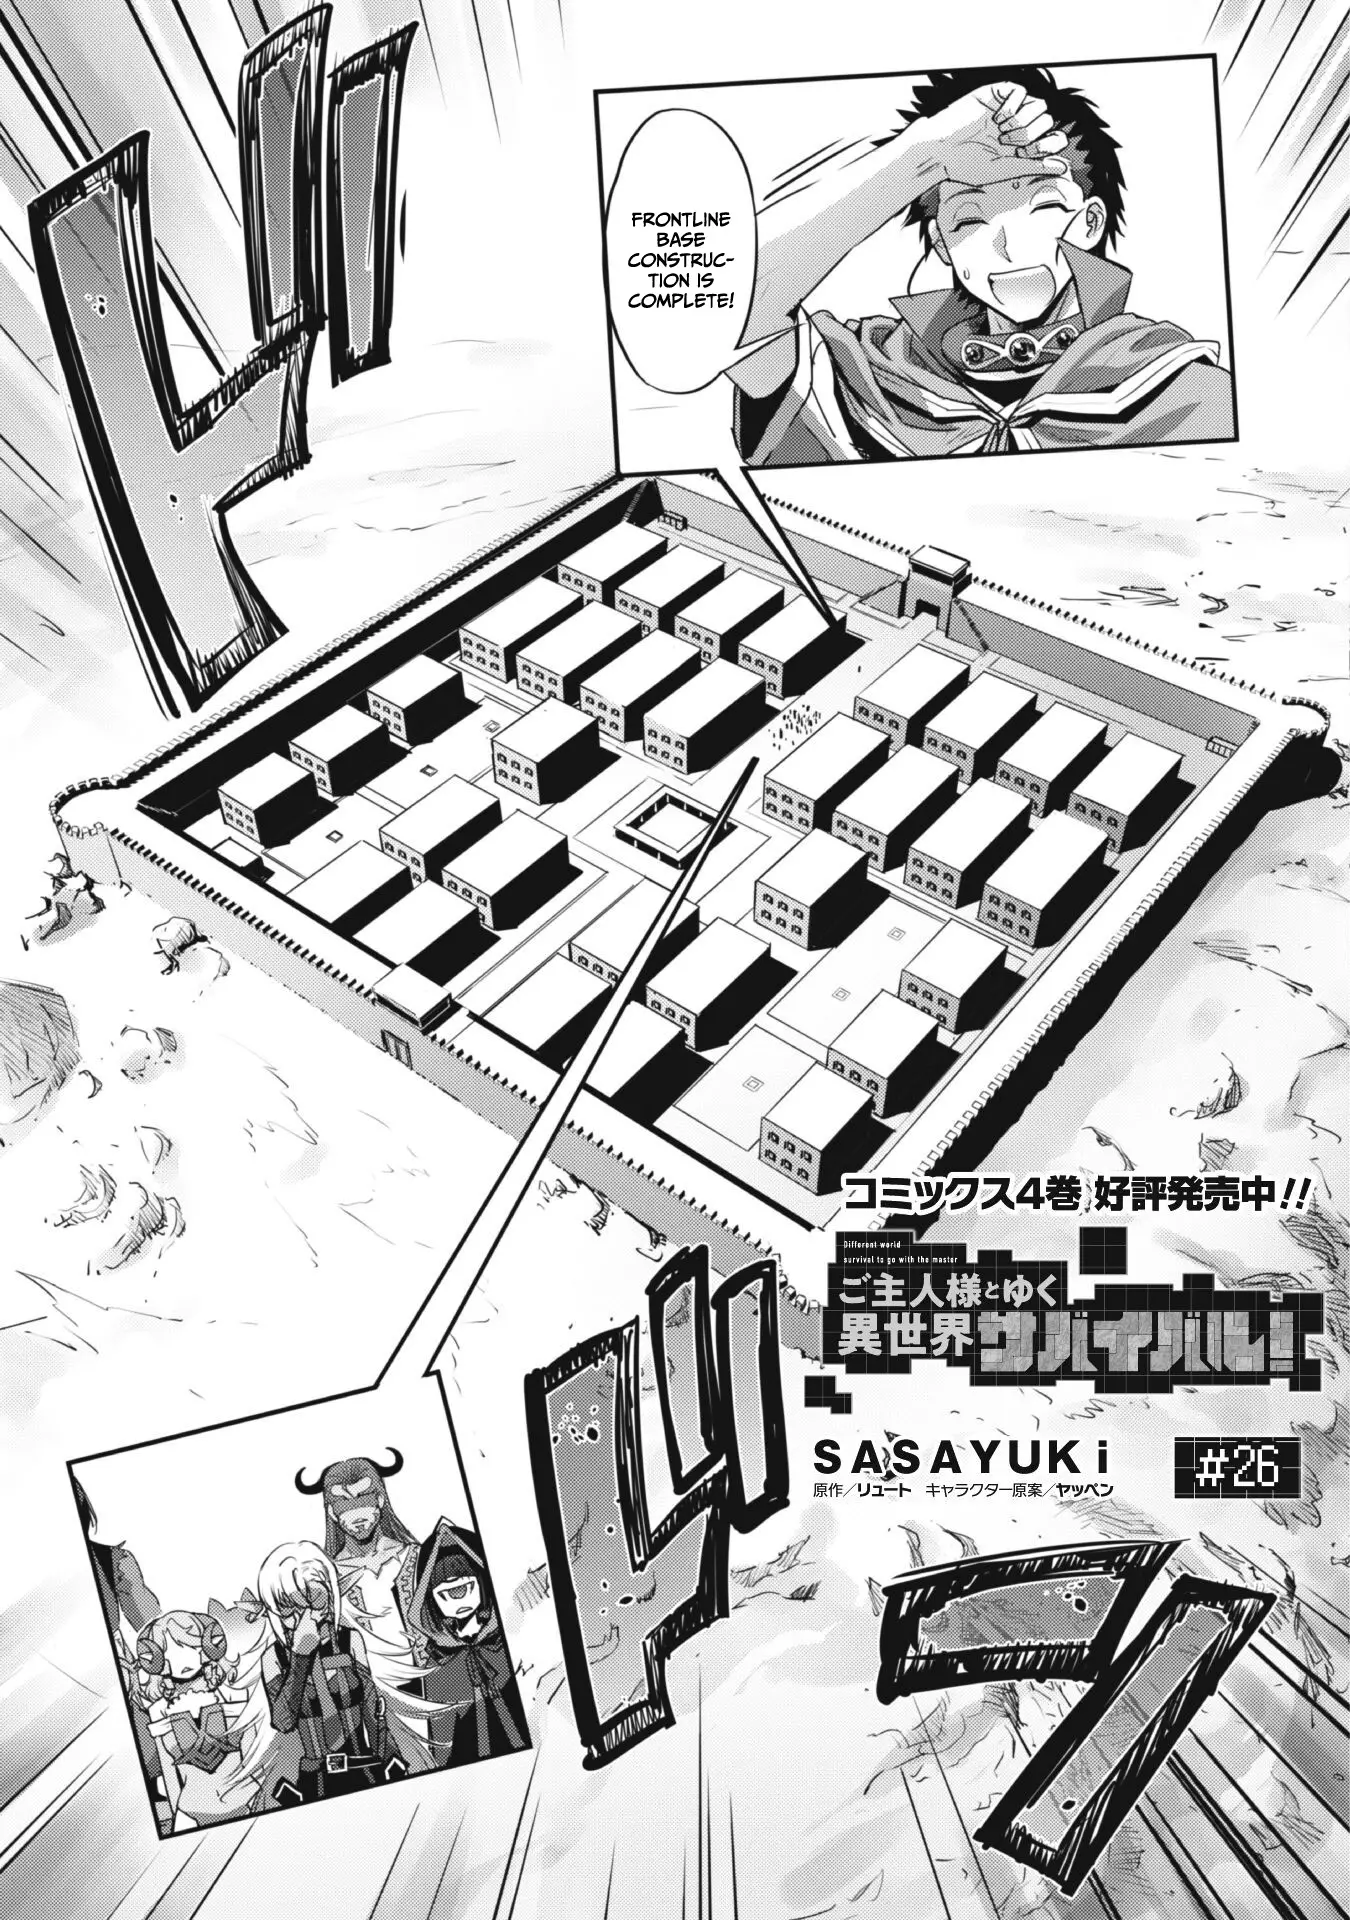 Goshujin-Sama To Yuku Isekai Survival! - 26 page 4-7505e780